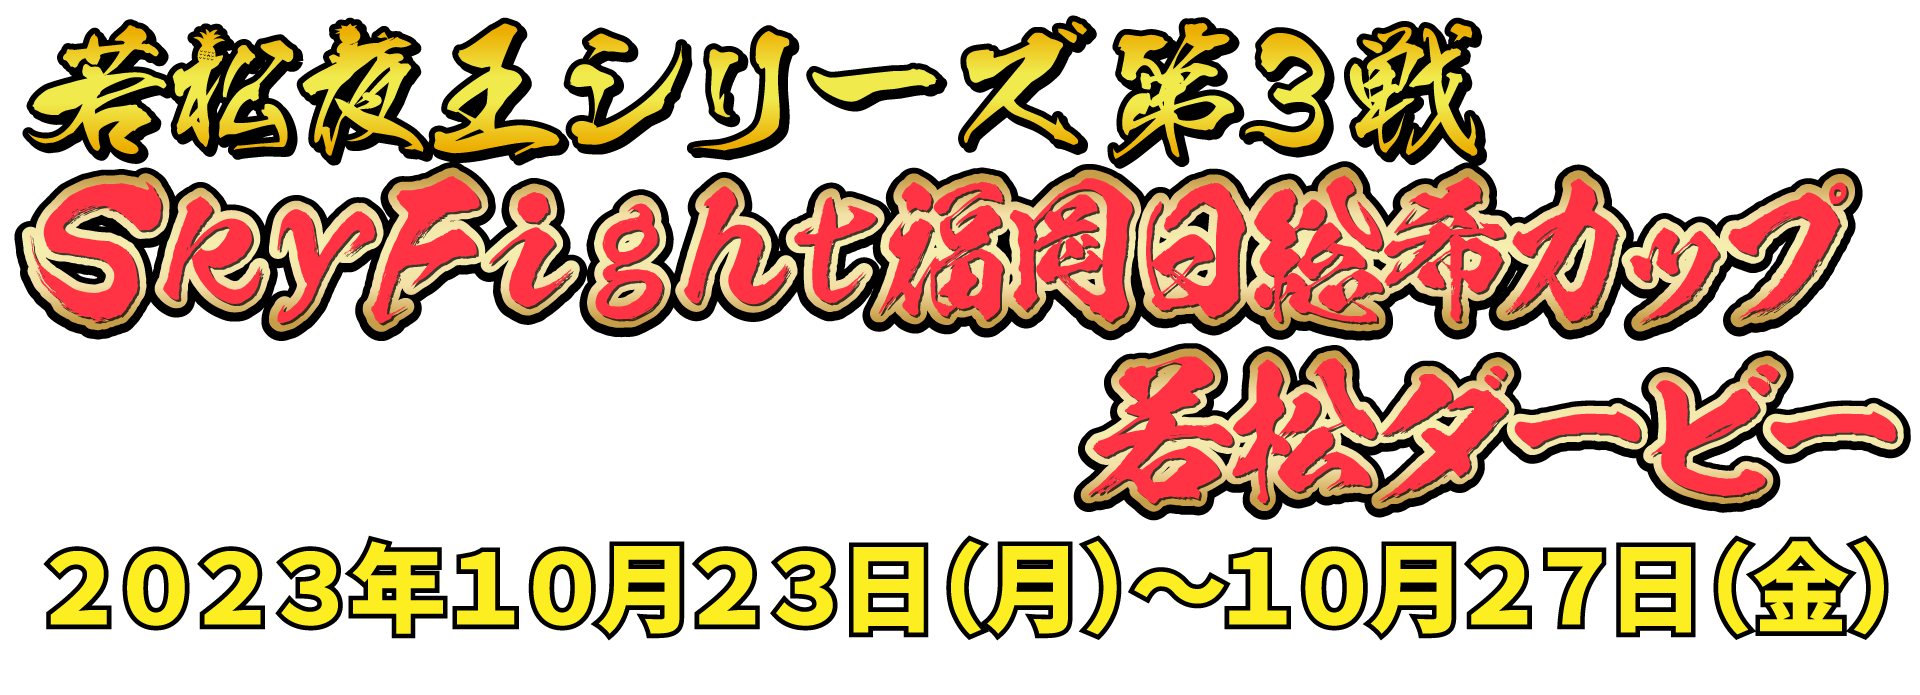 若松夜王シリーズ第3戦 SkyFight福岡日総希カップ若松ダービー 2023年10月23日(月)〜10月27日(金)